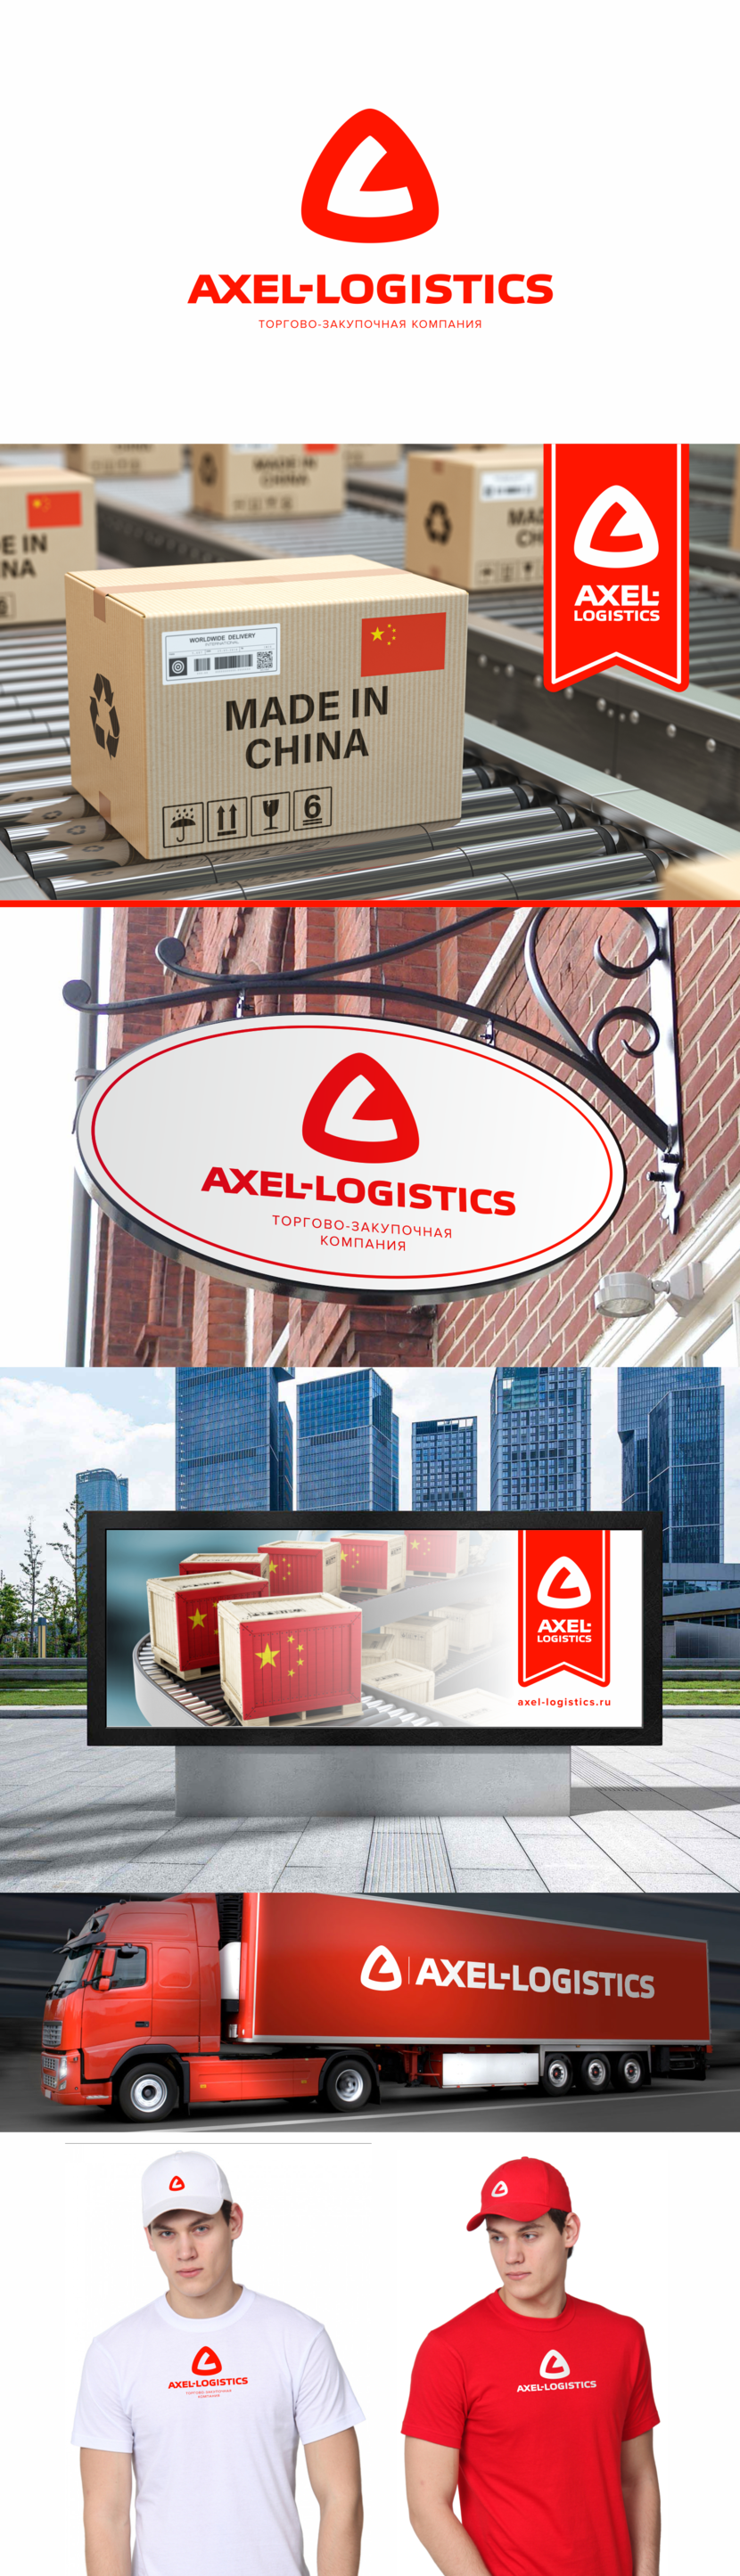 . - Торгово-закупочная компании "Axel-logistics"